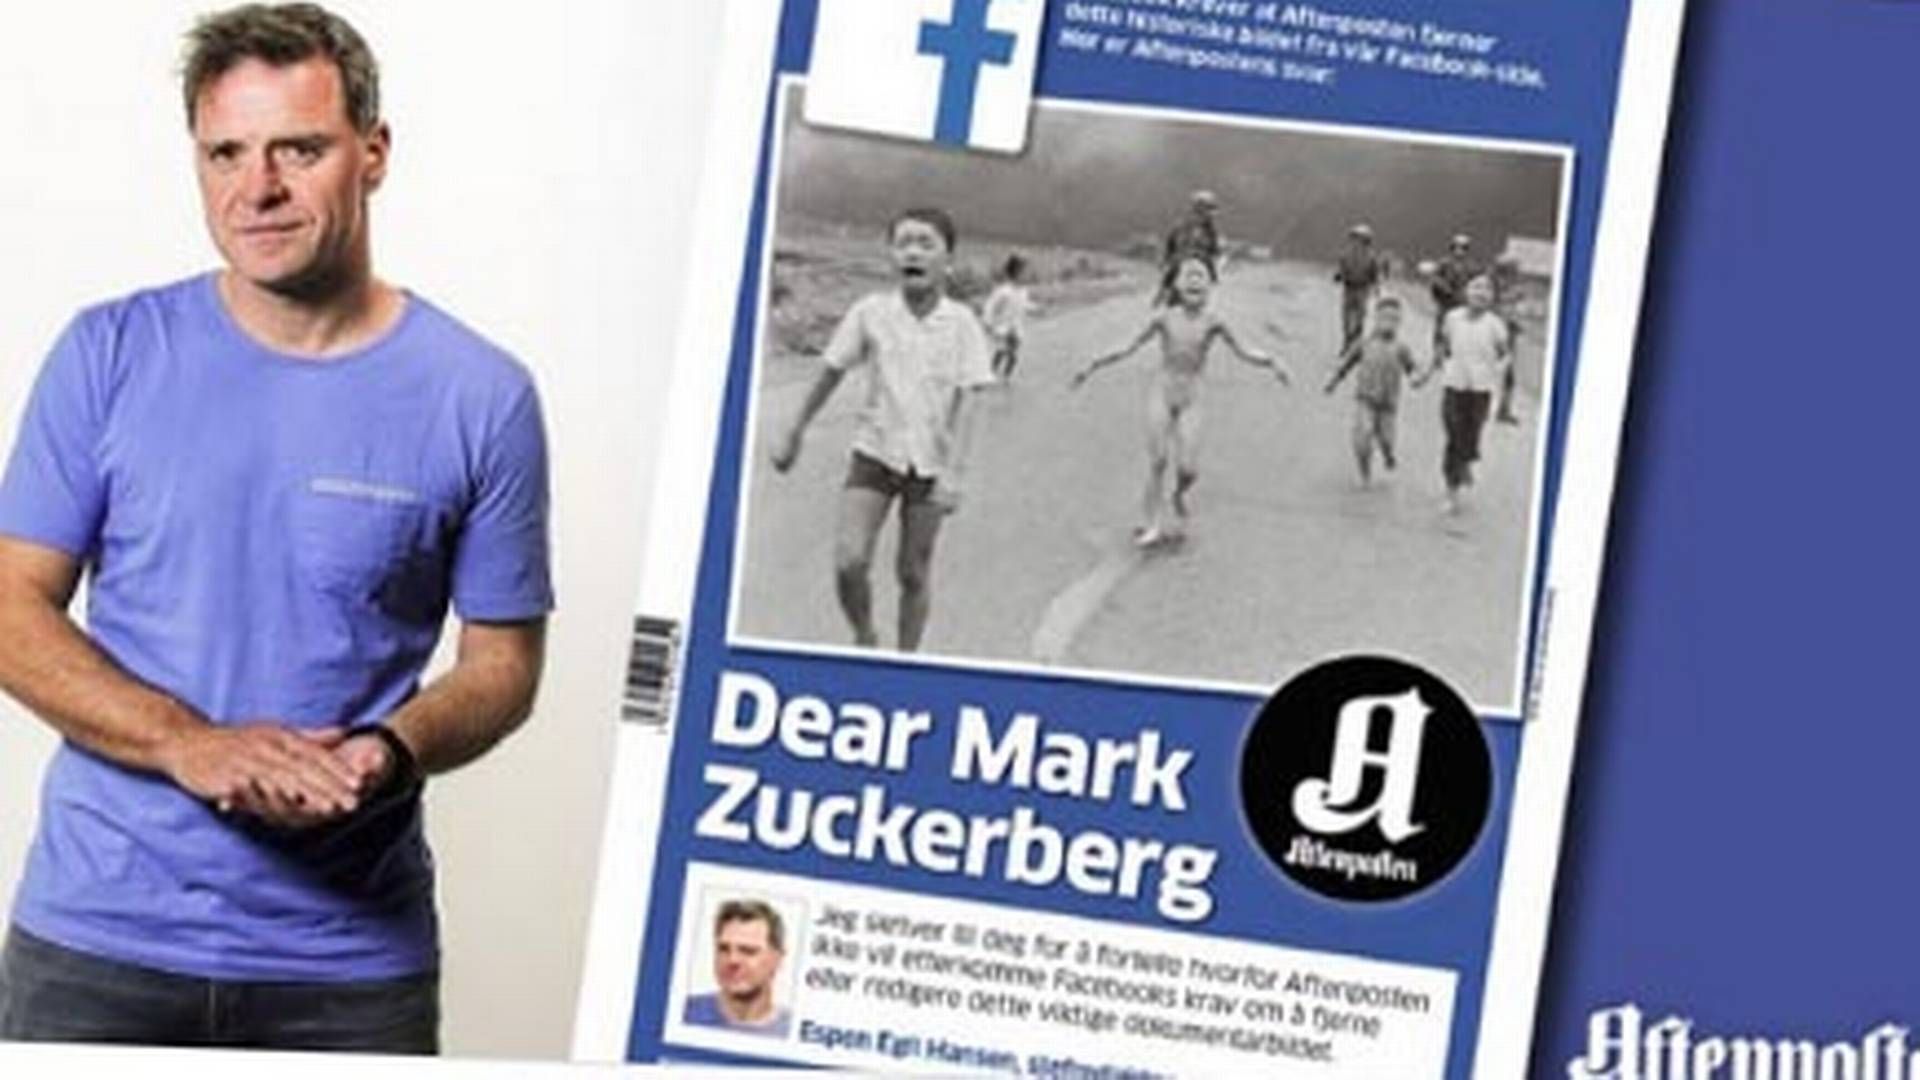 Debatten om Facebooks billedcensur blev bl.a. startet af norske Aftenposten, der ryddede forsiden i en direkte henvendelse til Mark Zuckerberg. | Foto: Screenshot